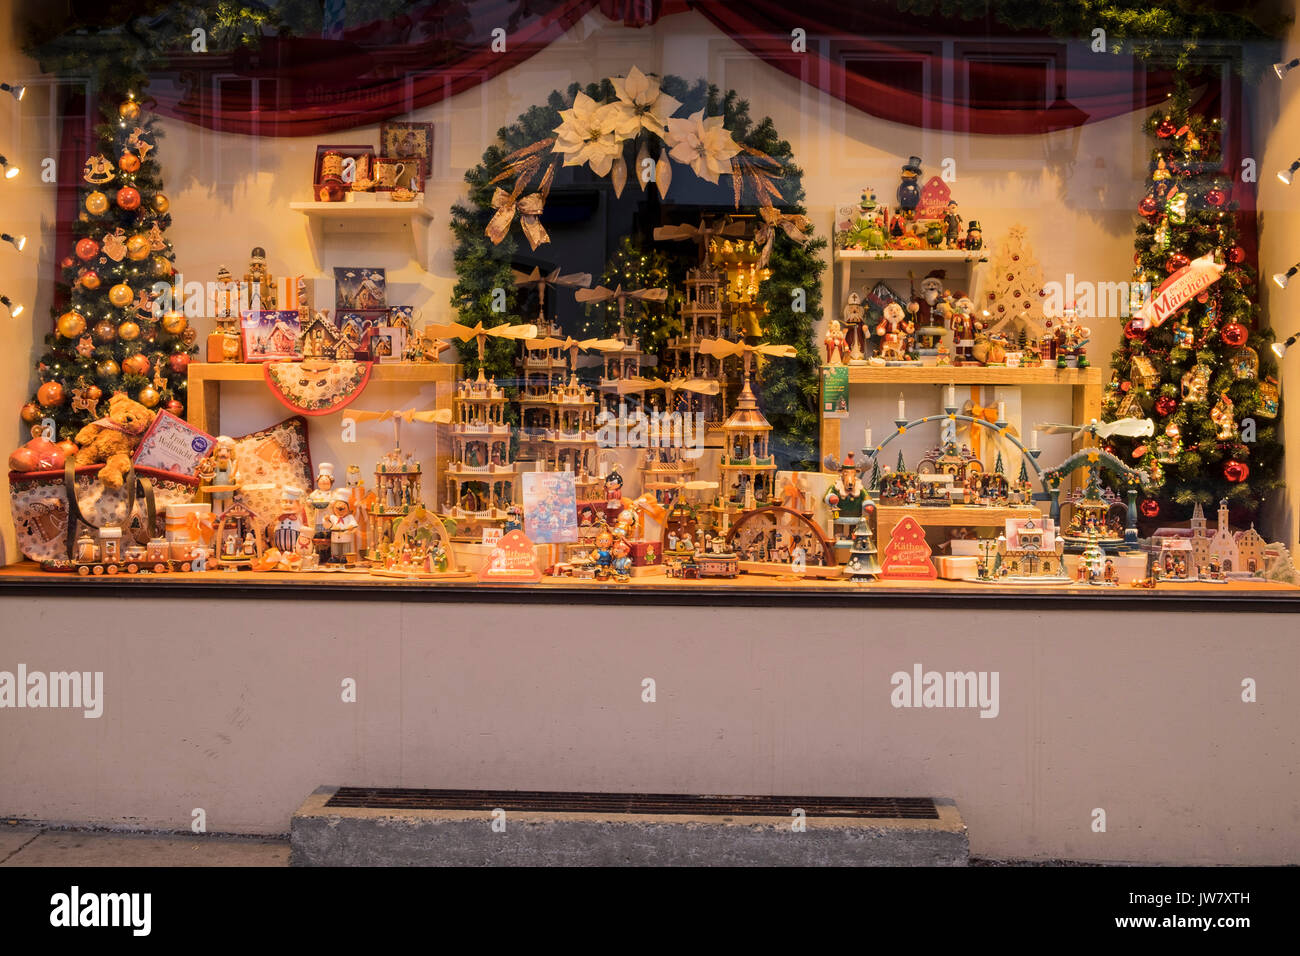 Kathe Wohlfahrt Christkindlmarkt, christmas shop window display in Oberammergau, Garmisch Partenkirchen, Bavaria, Germany Stock Photo